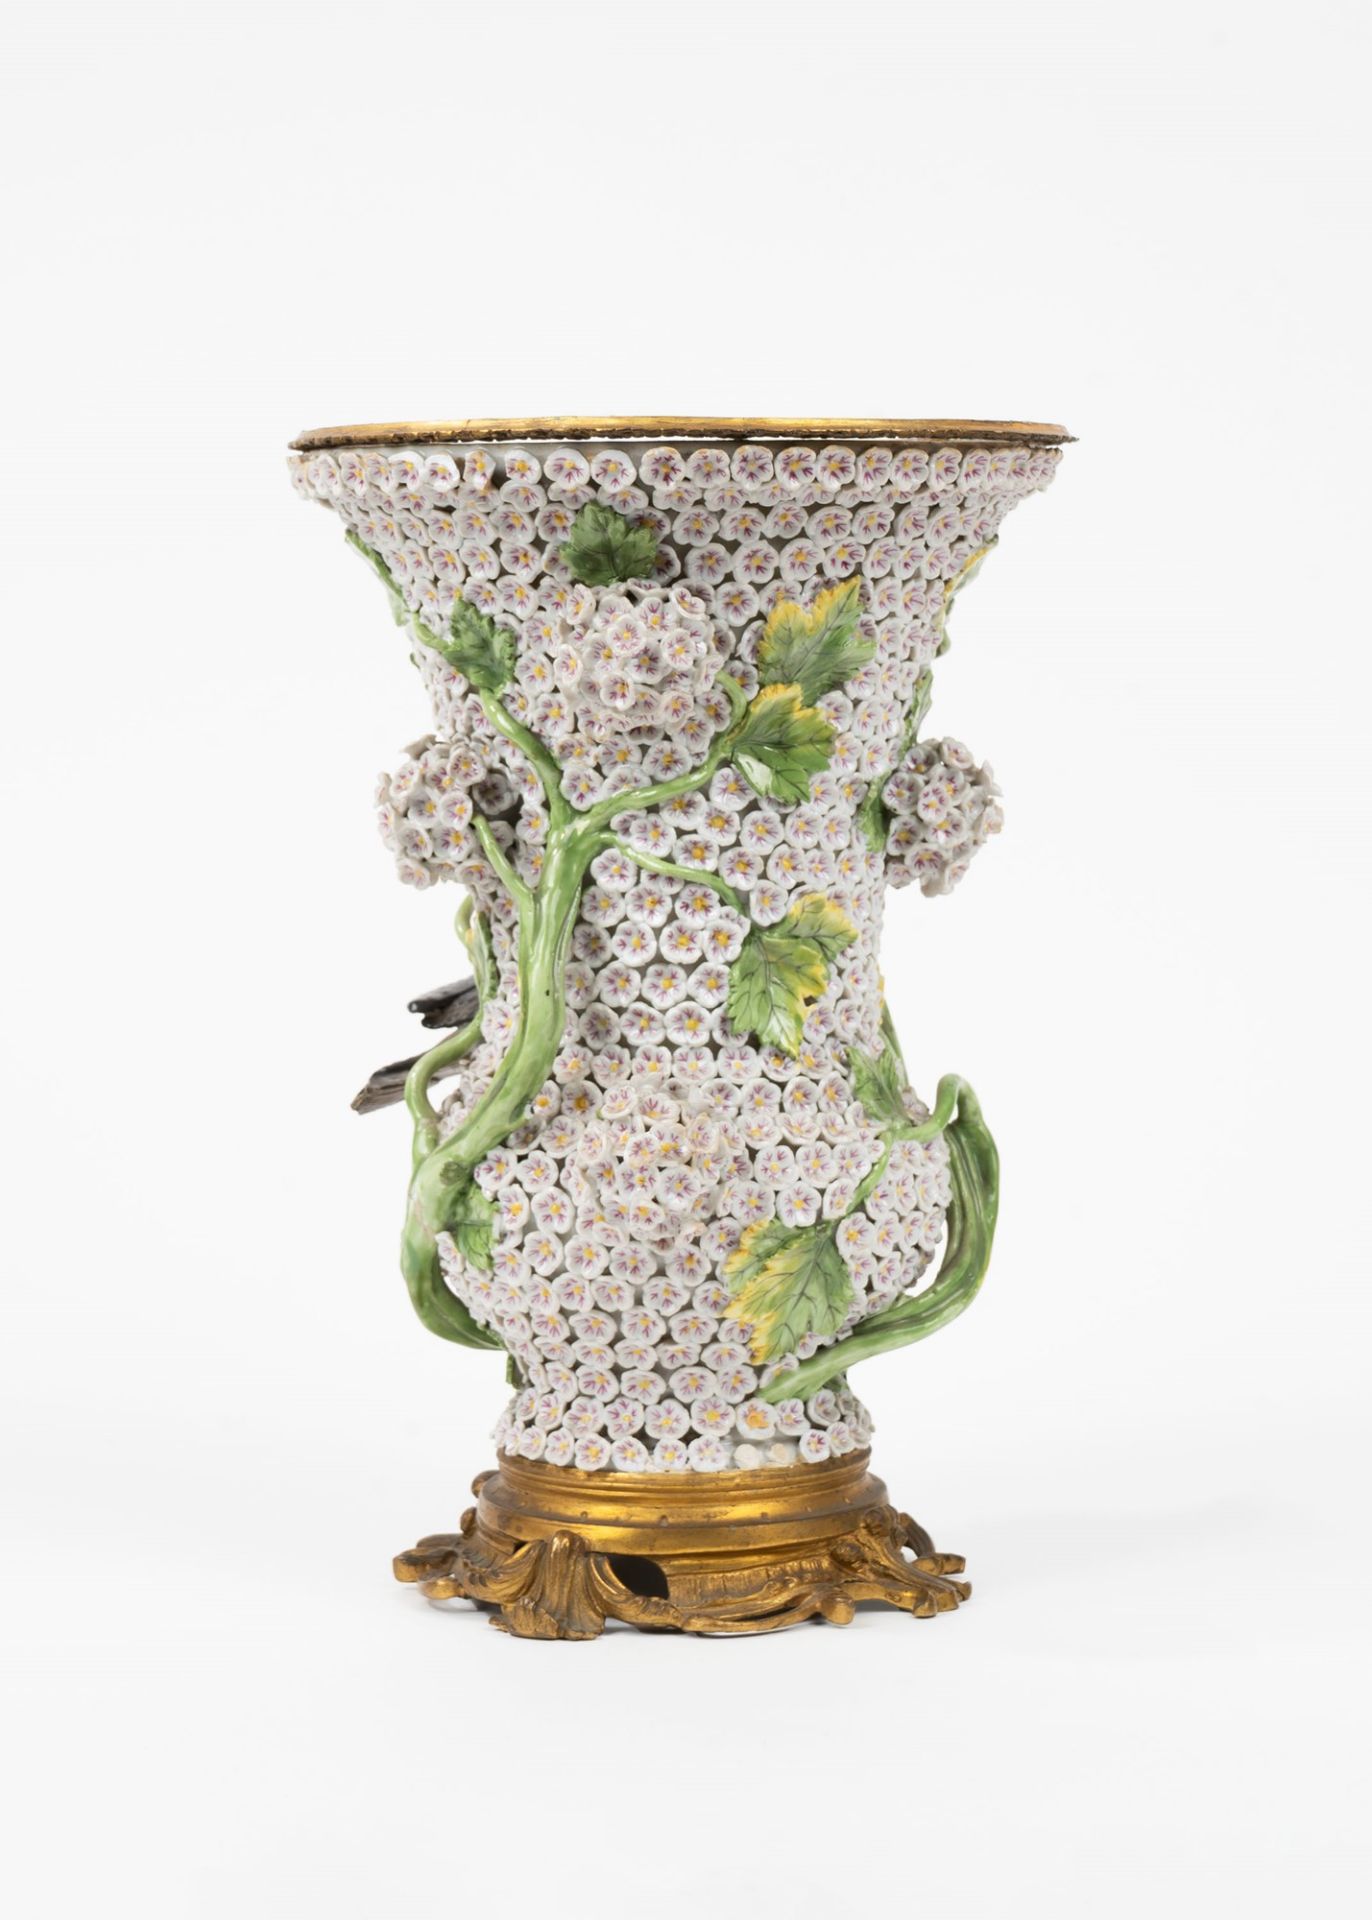 Schneeballen vase on a gilded bronze base, Meissen manufacture, 19th century - Image 3 of 4